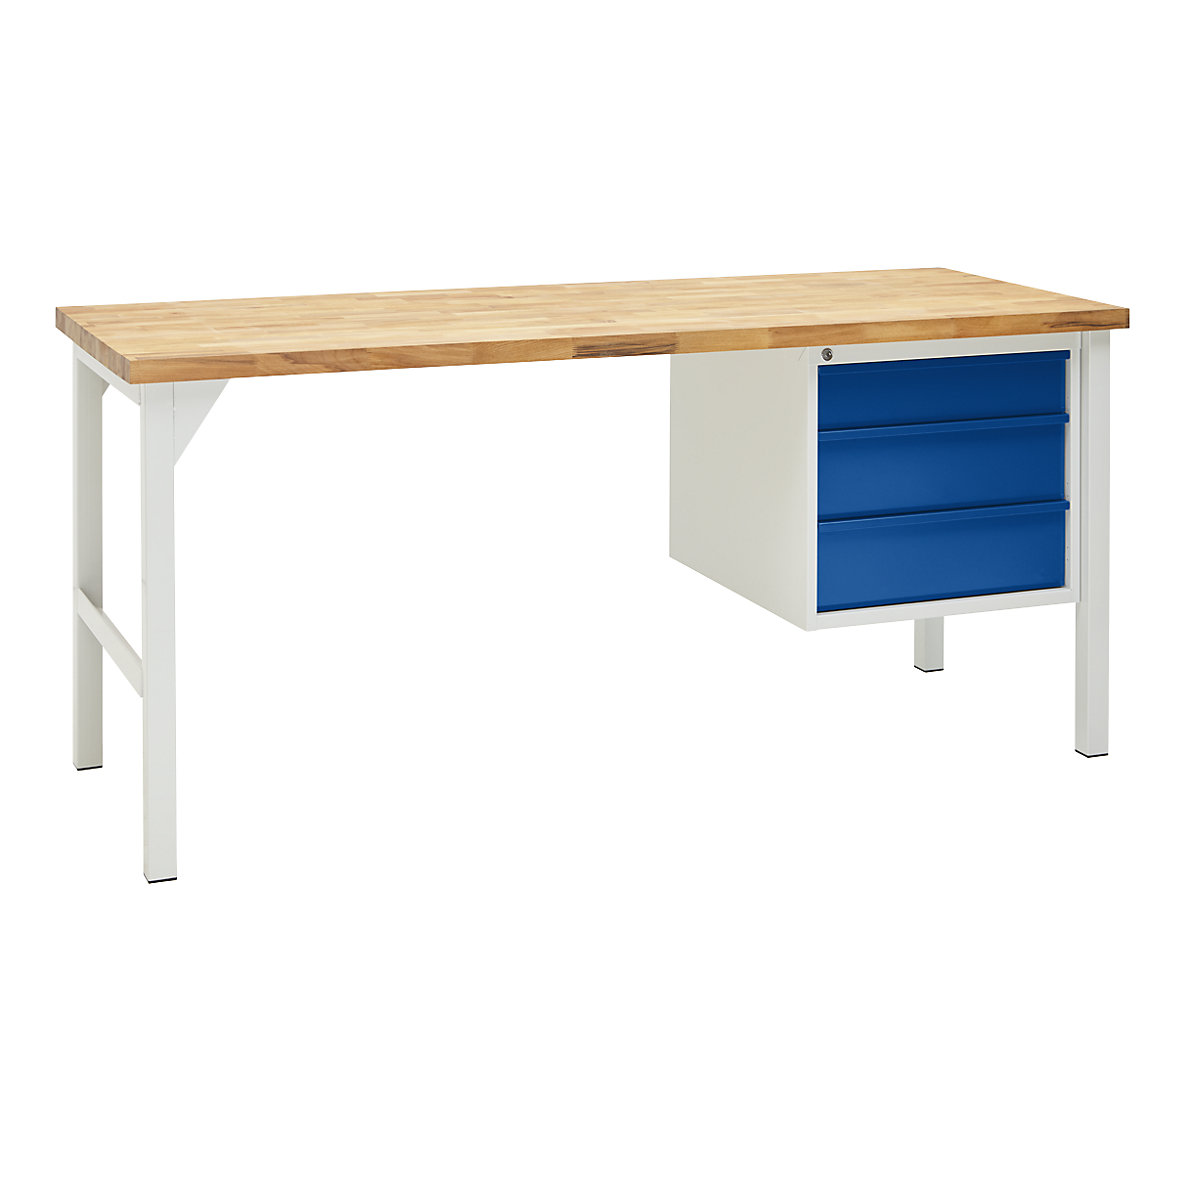 Stół warsztatowy, konstrukcja ramowa, szer. 2000 mm, 3 szuflady: 1 x 125 / 2 x 175 mm, jasnoszary/niebieski gencjanowy-1